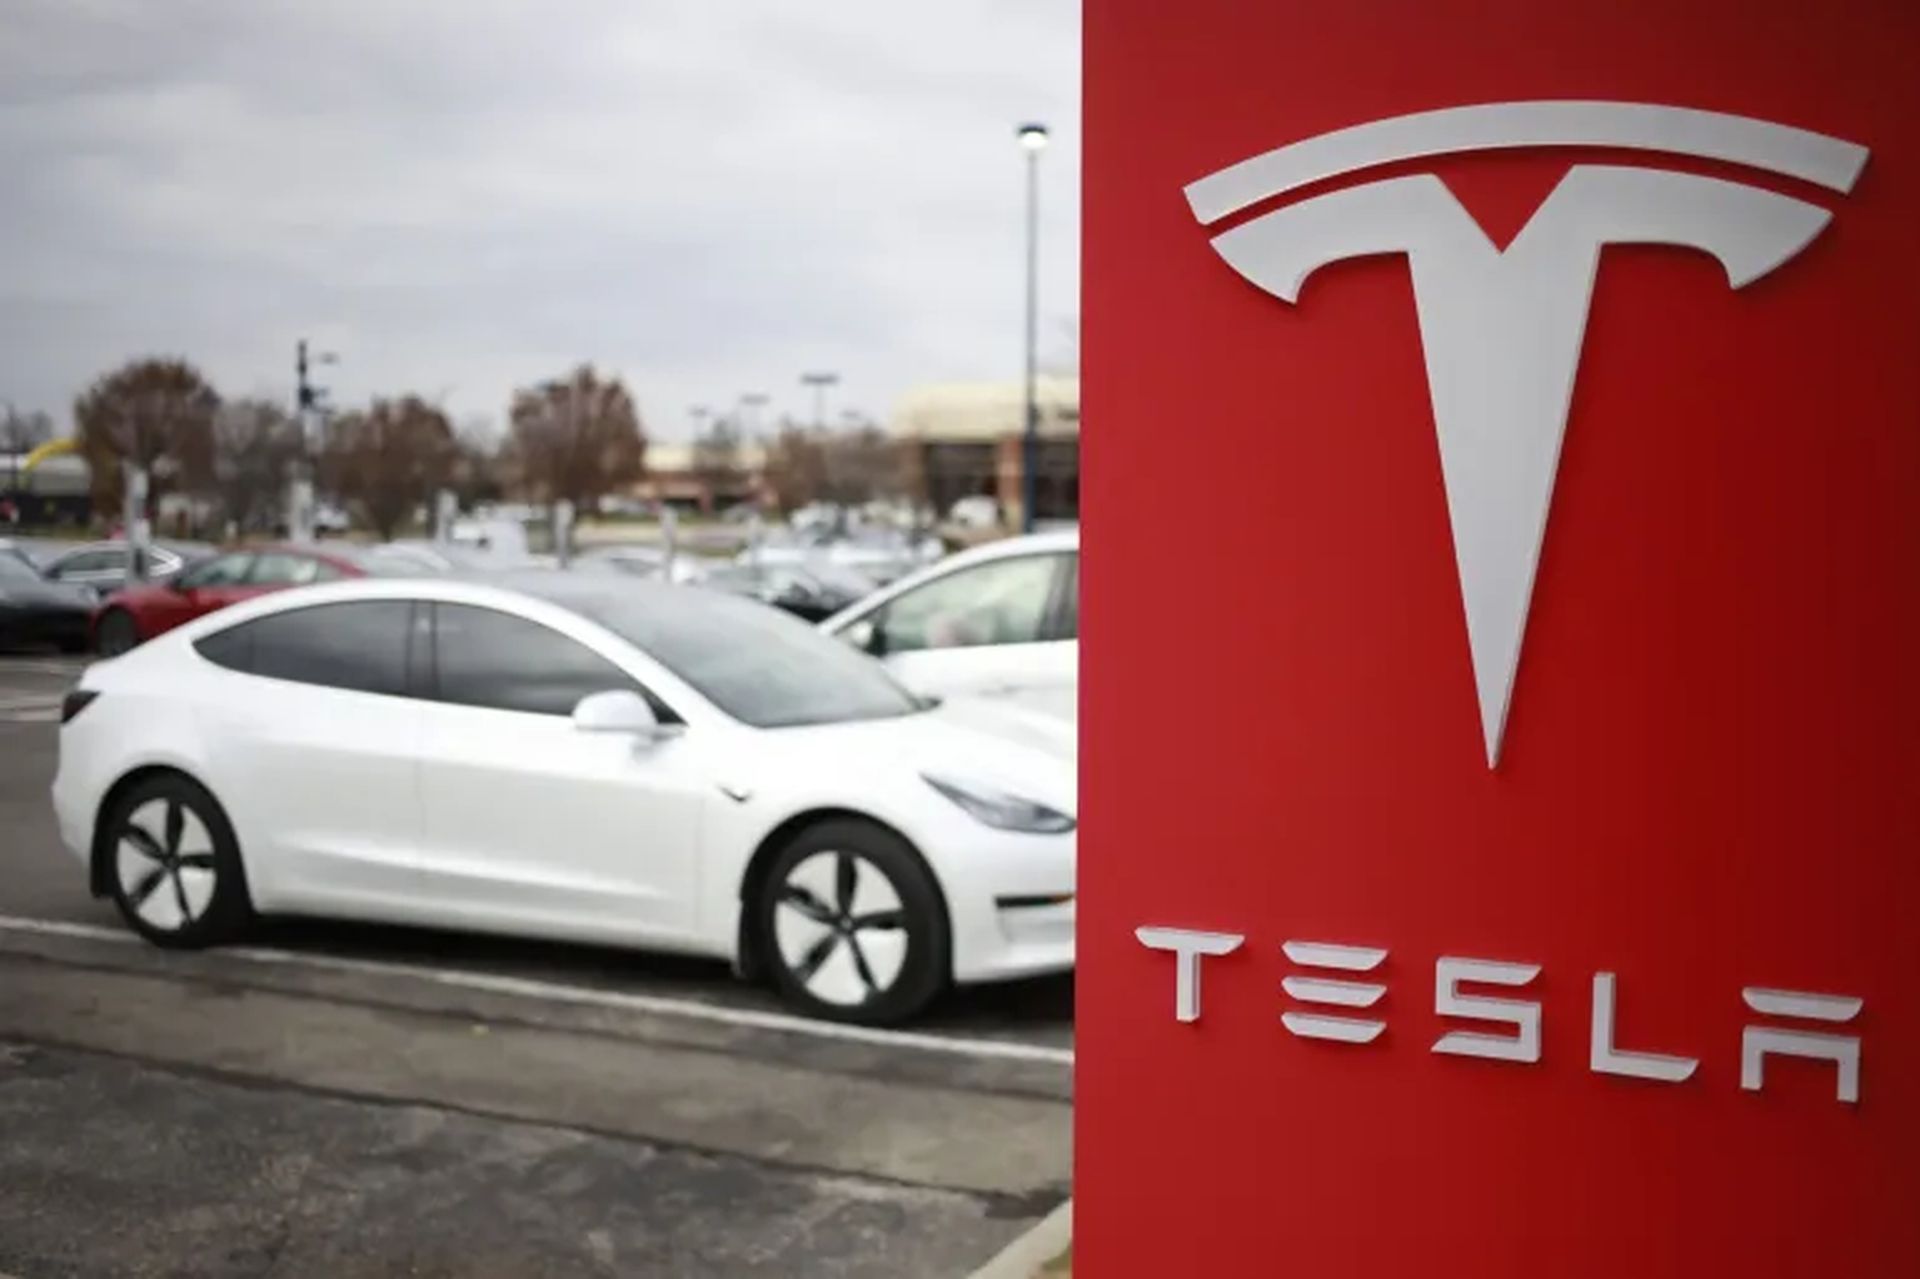 Tesla ruft Fahrzeuge zurück, fast 1,1 Millionen betroffene Fahrzeuge in den Vereinigten Staaten, und das liegt daran, dass die Fenster zu schnell schließen und die Menschen einklemmen könnten ...